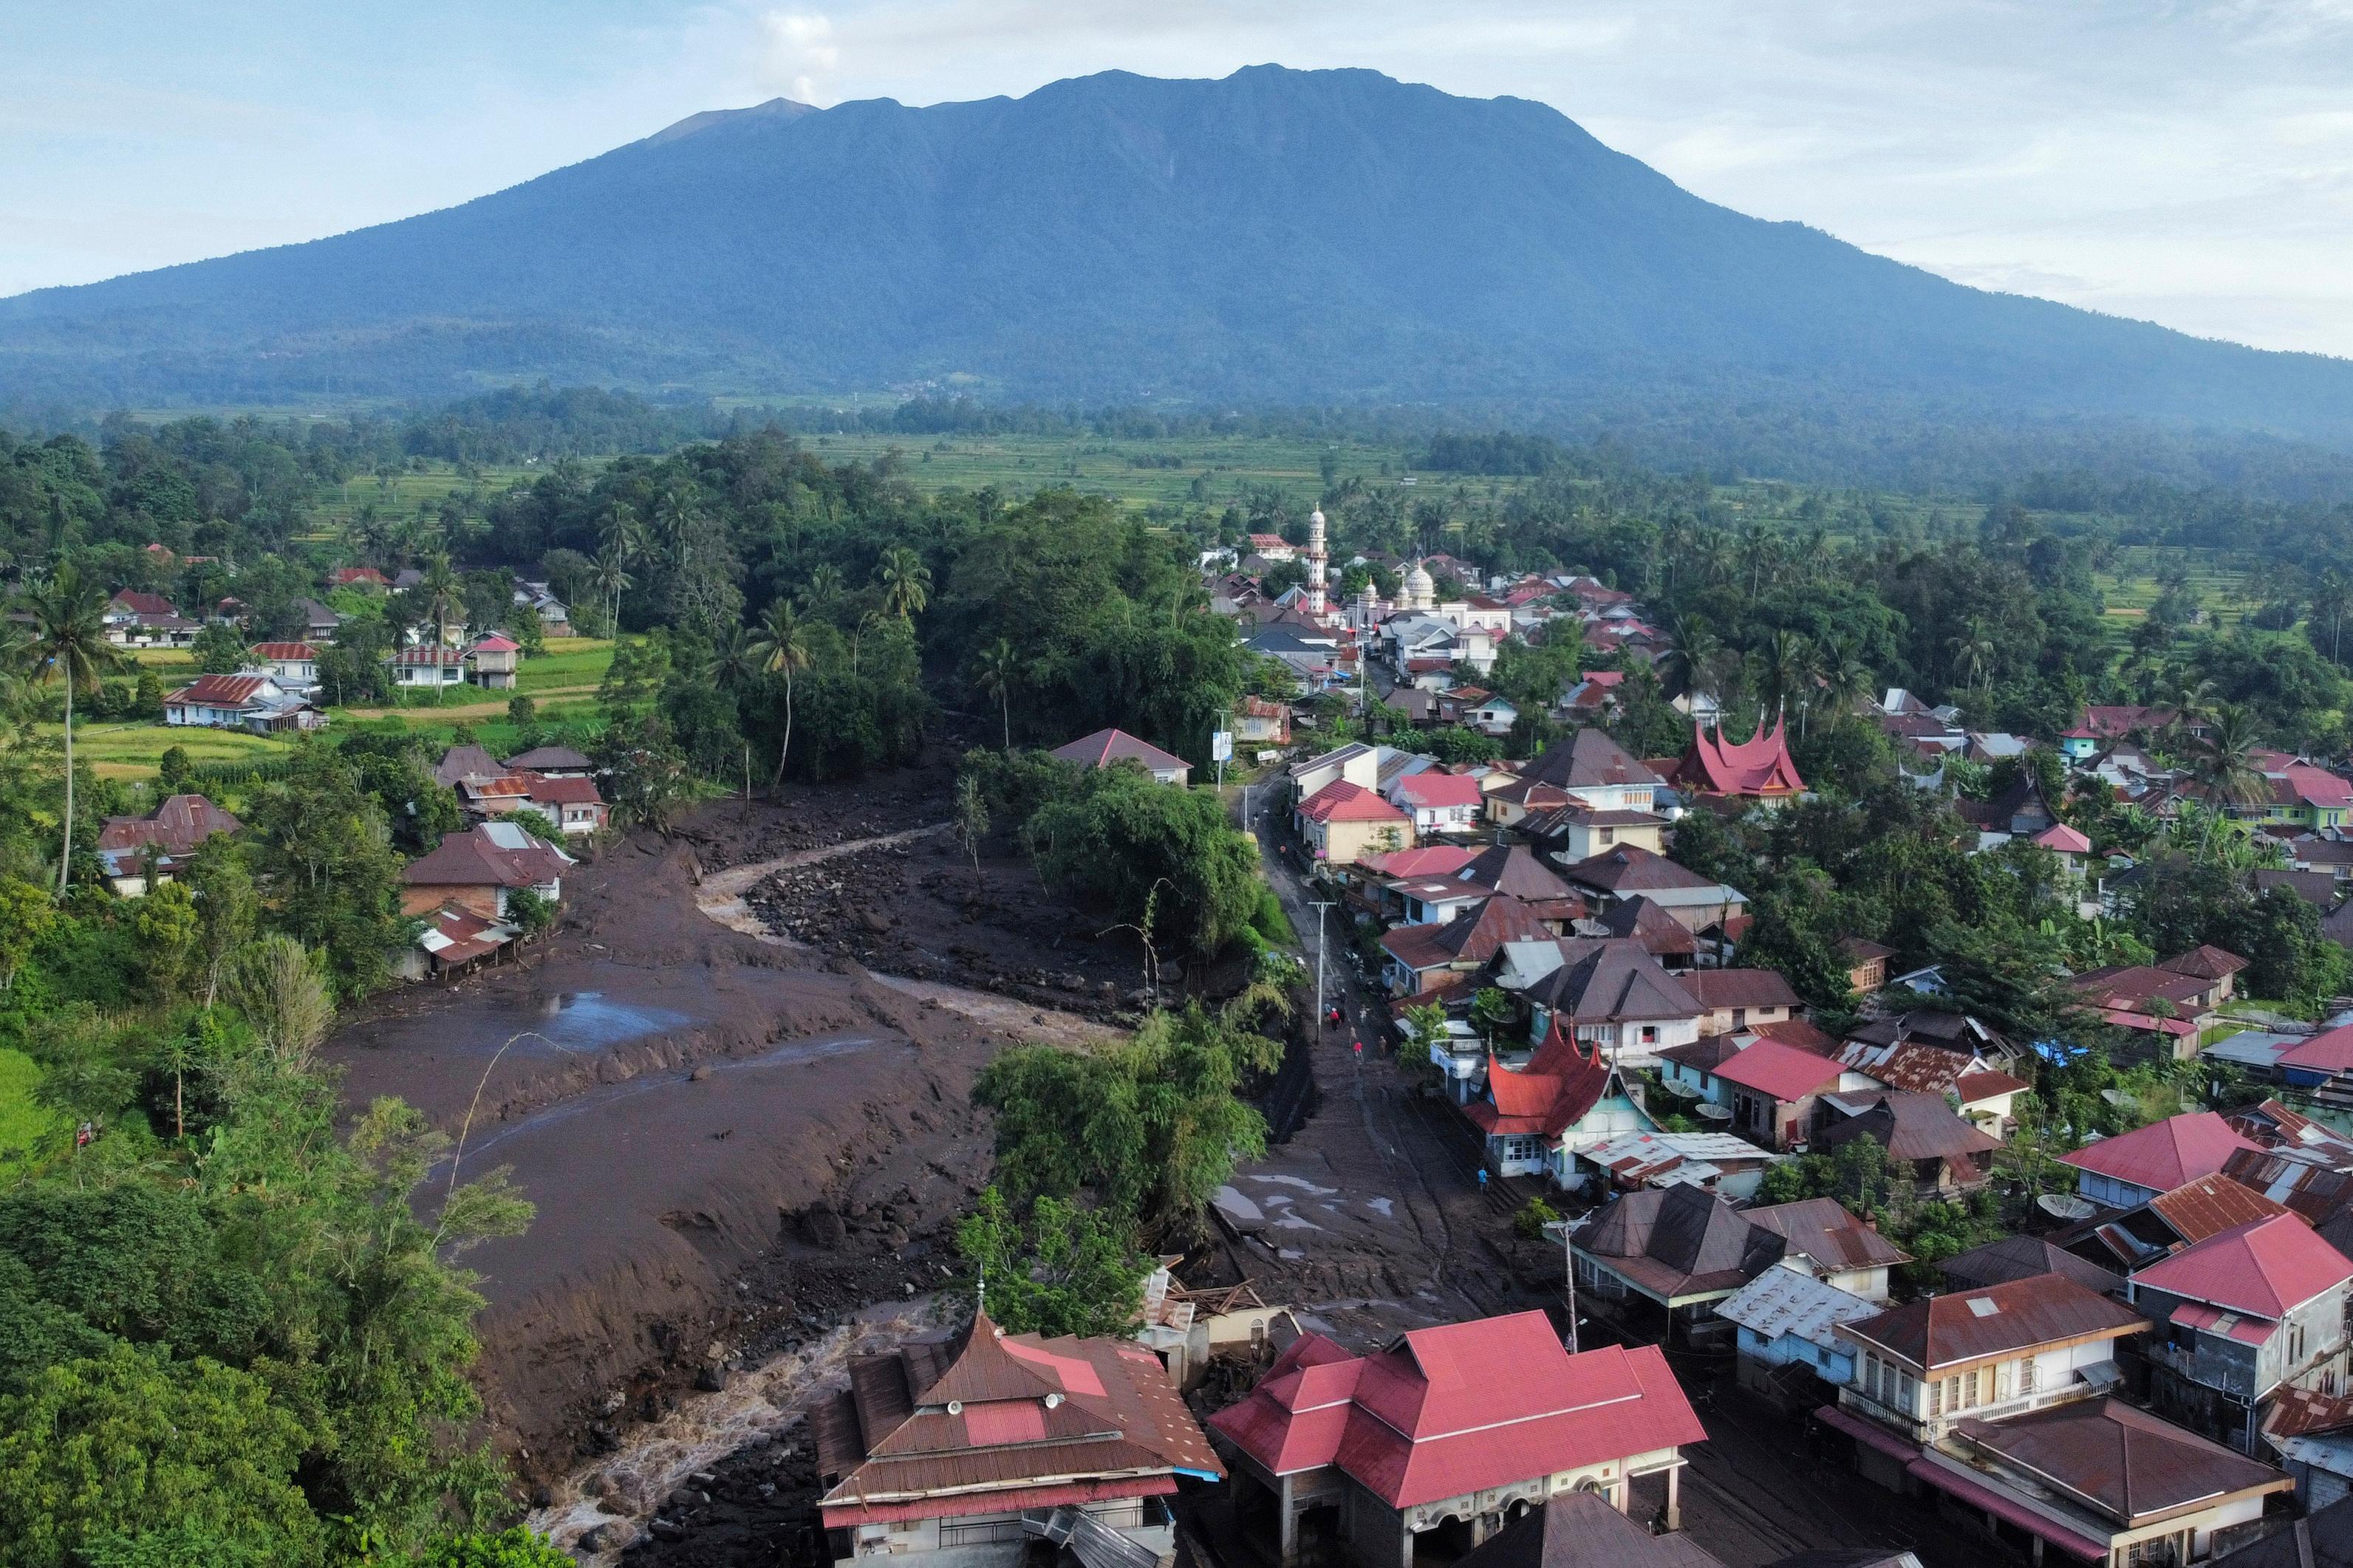 En överblick av orten Tanah Datar i västra Sumatra, som är en av de värst drabbade orterna efter helgens oväder. Bilden togs av en drönare på måndagen, lokal tid. Foto: Ali Nayaka/AP/TT